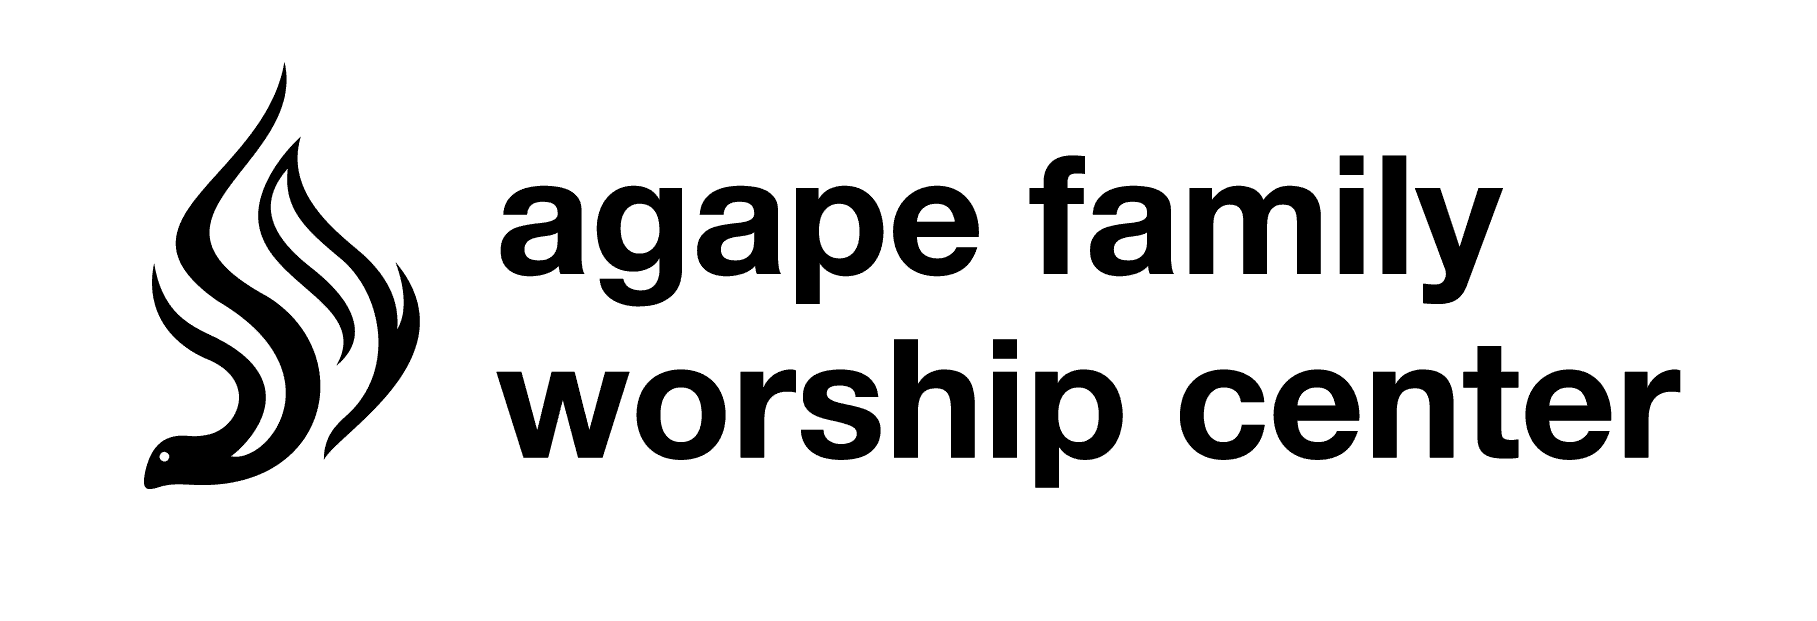 Agape Family Worship Center